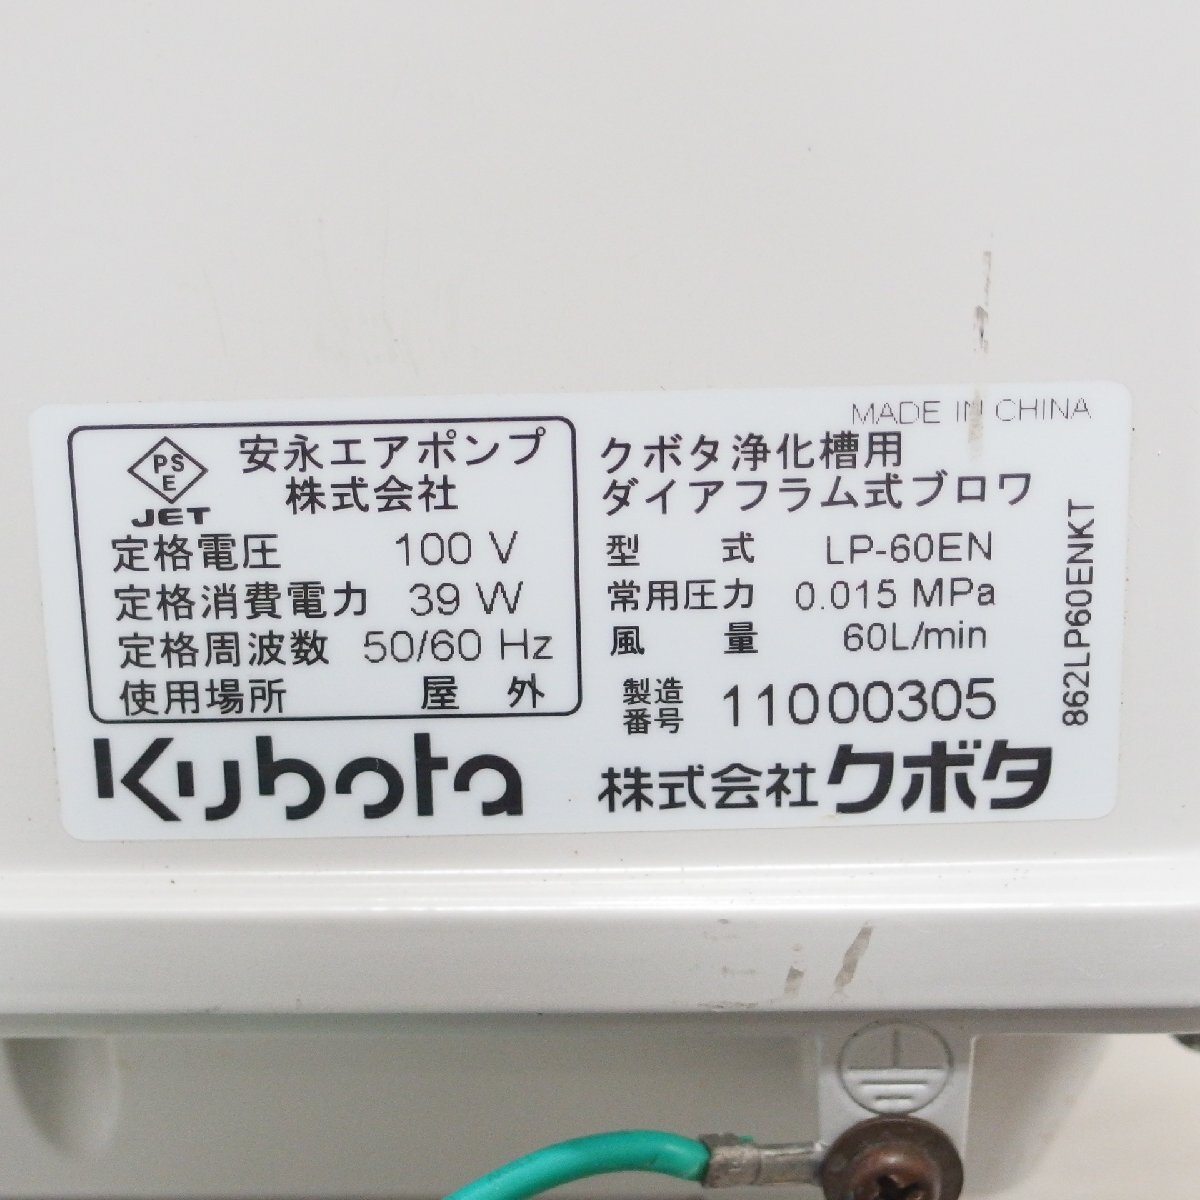 * дешево . воздушный насос Kubota ... для диафрагма тип вентилятор LP-60EN*USED